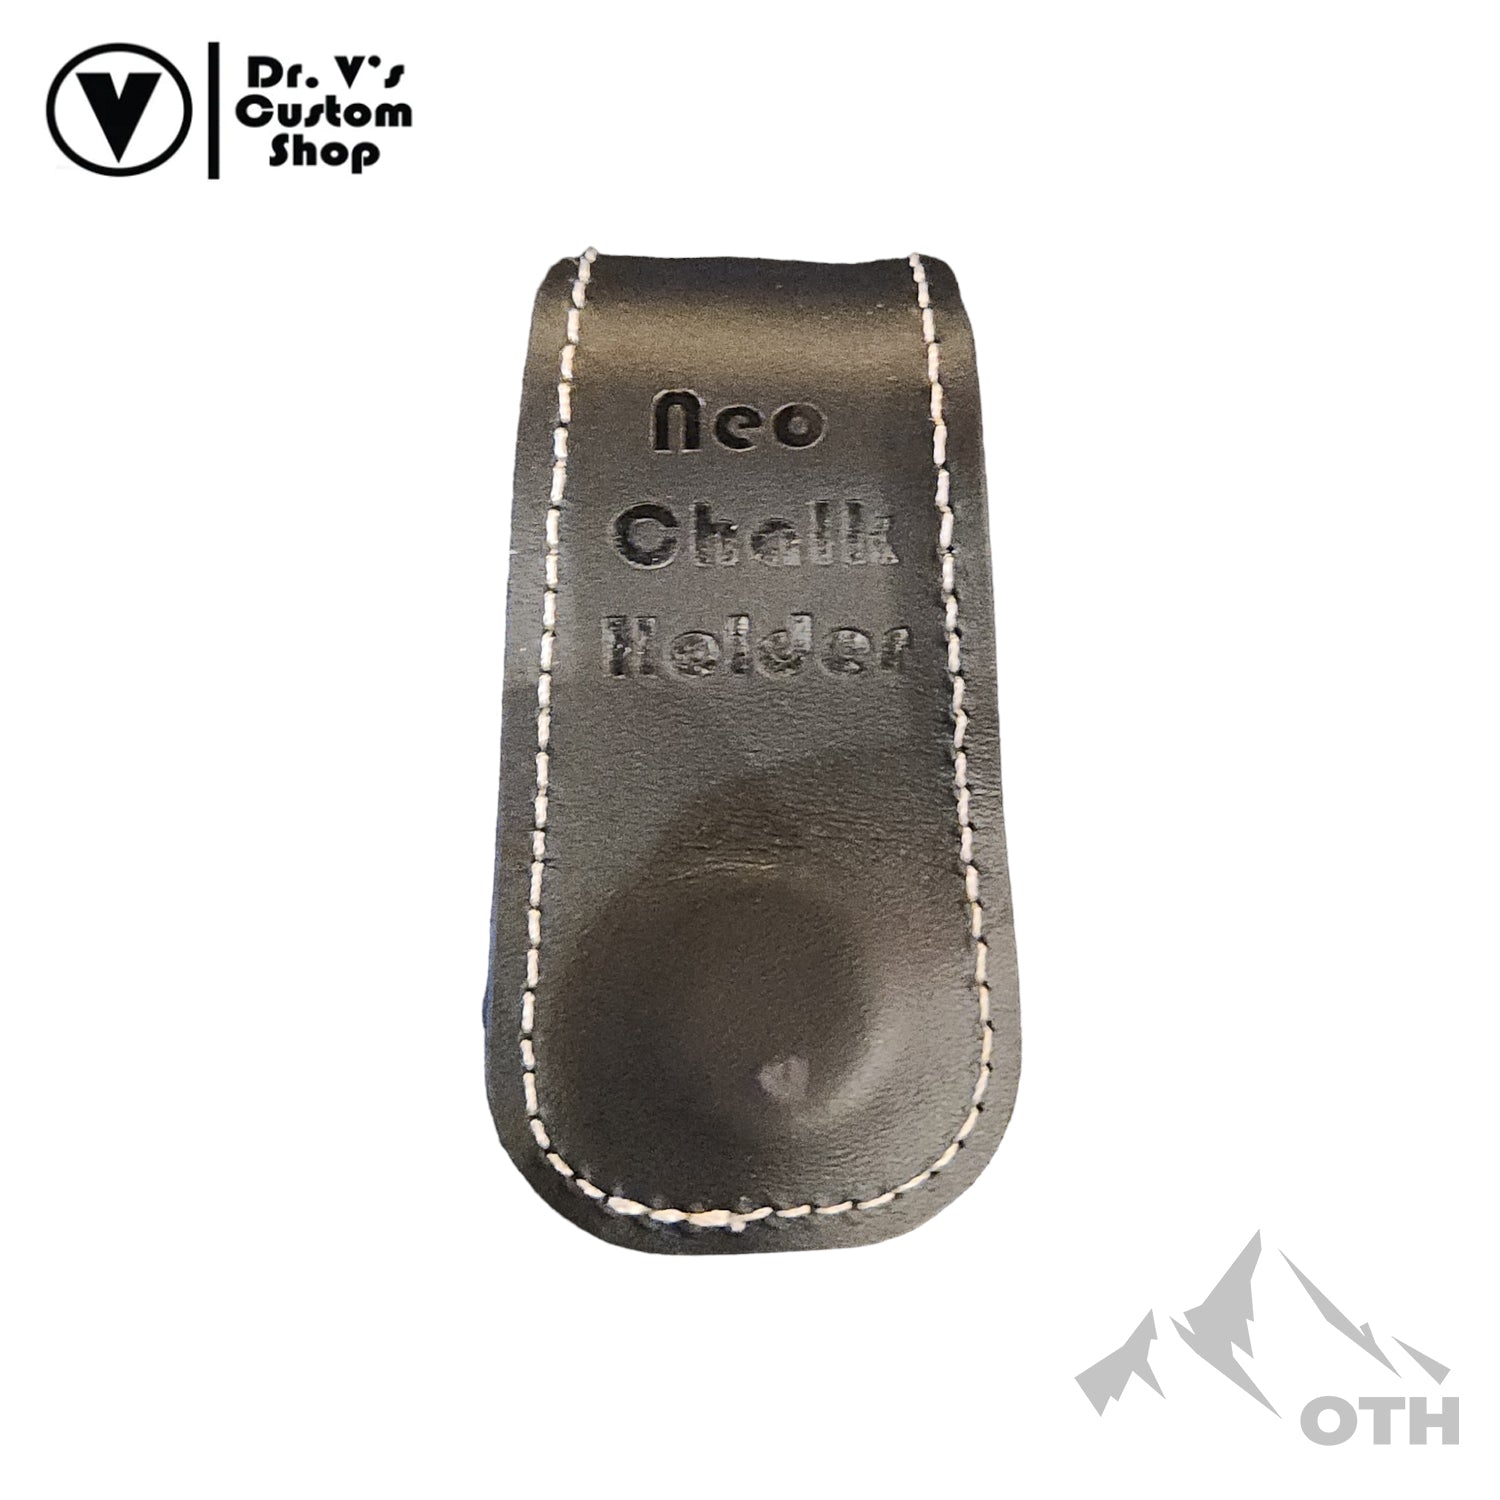 Dr. V's Chalk Holder Leather Belt Clip